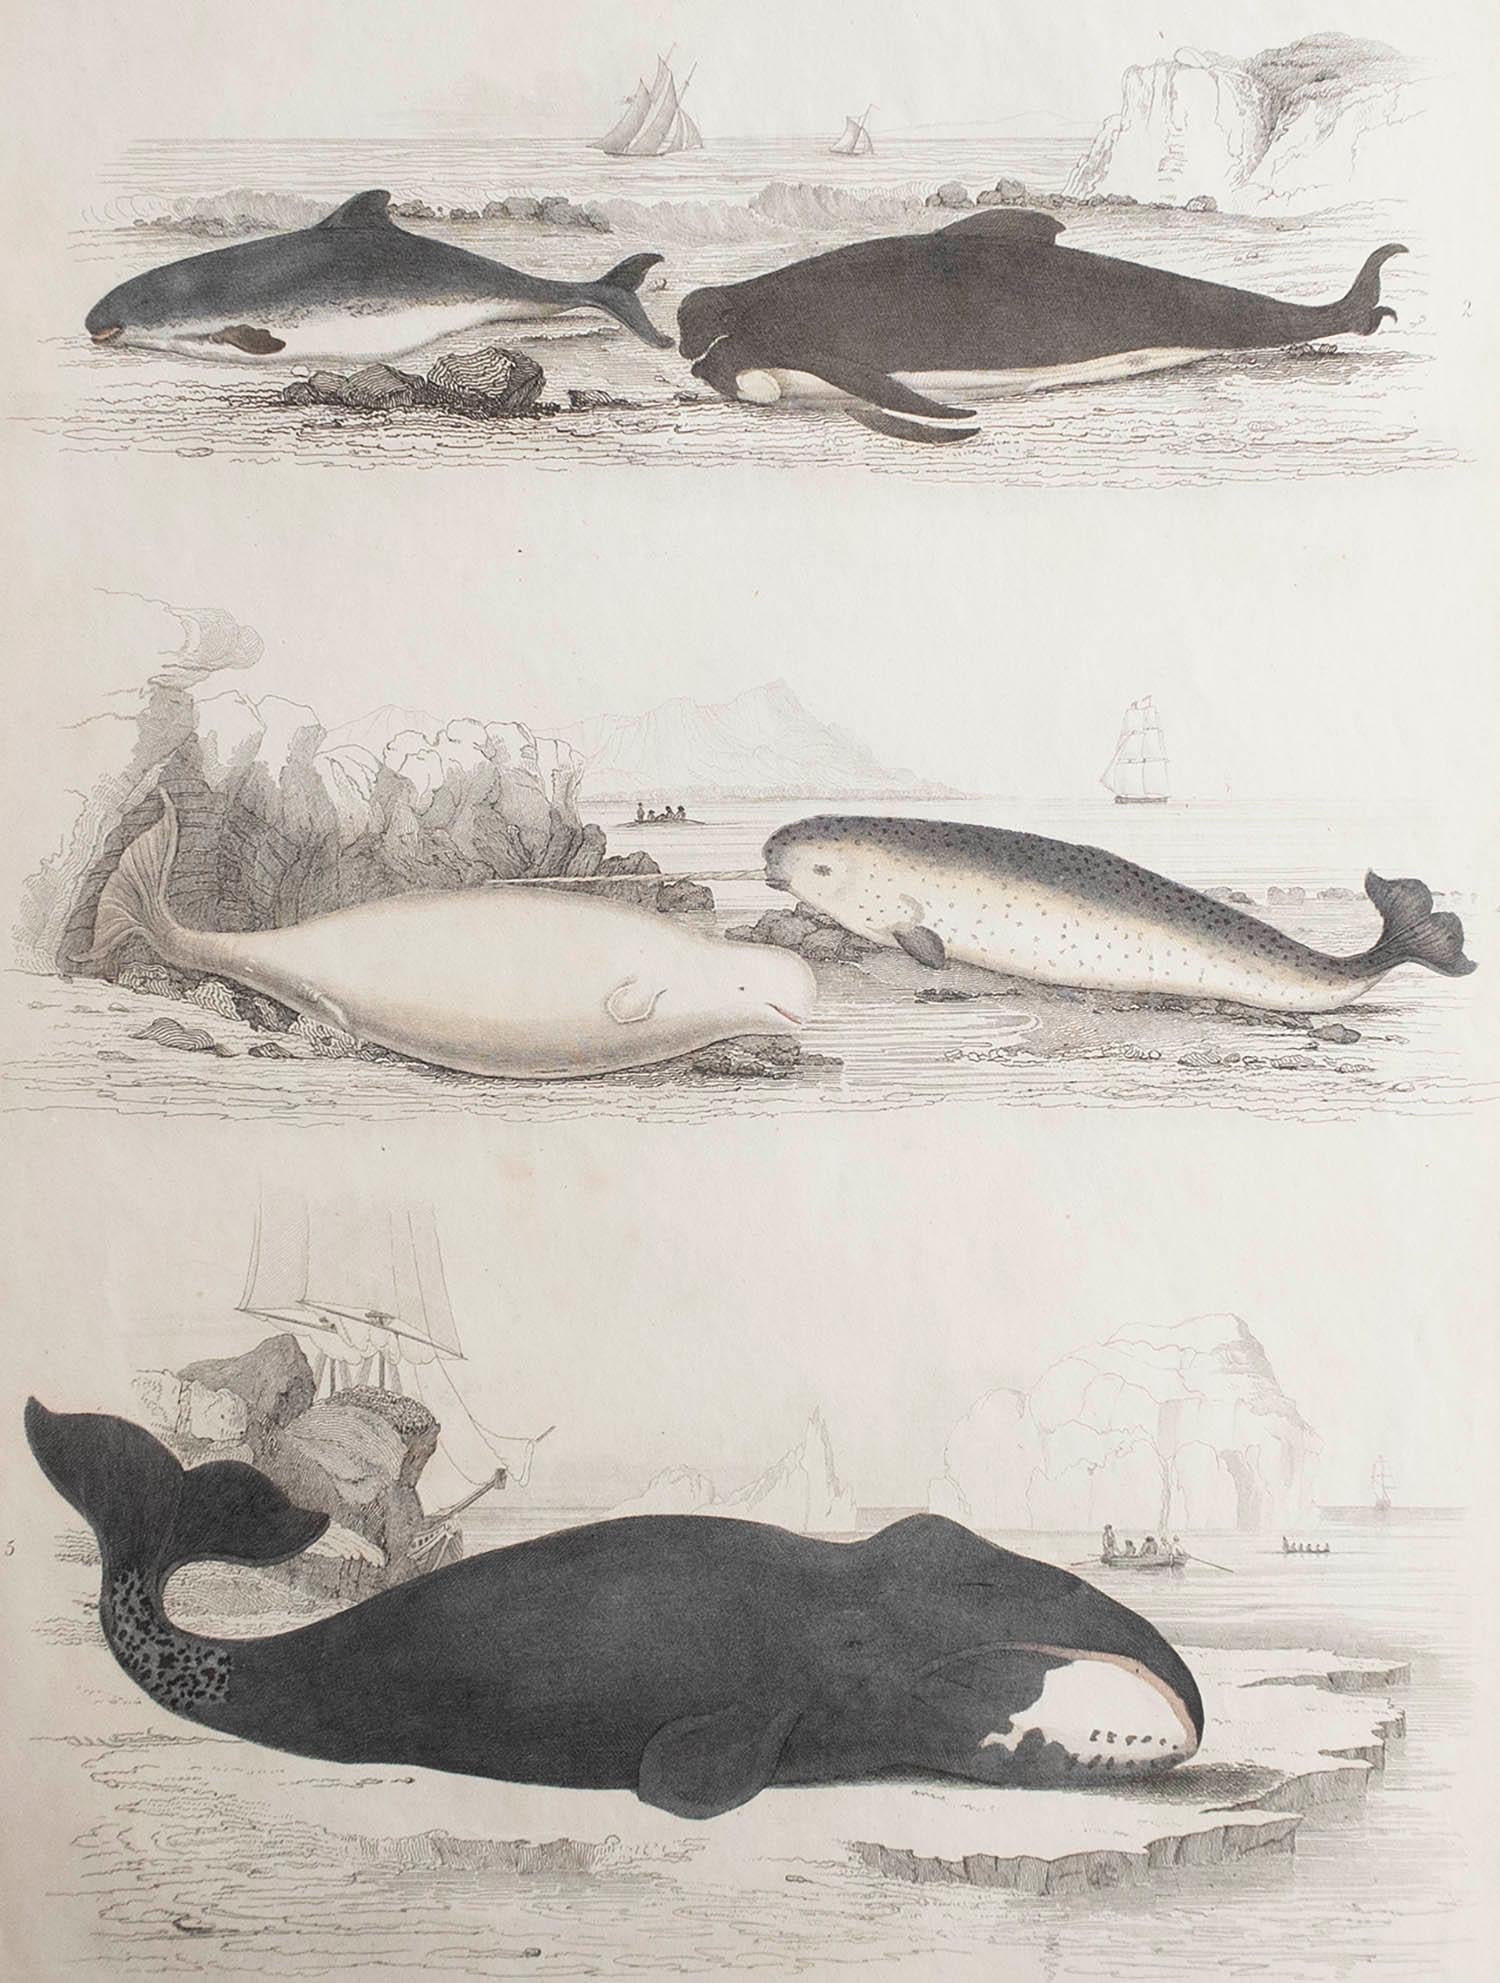 Tolles Bild von Walen und Delfinen

Ungerahmt. So haben Sie die Möglichkeit, Ihre eigene Auswahl an Rahmen zu treffen.

Lithographie nach Cpt. Brown, Gilpin und Edwards mit Original-Handkolorit.

Veröffentlicht um 1835

Kostenloser Versand.




